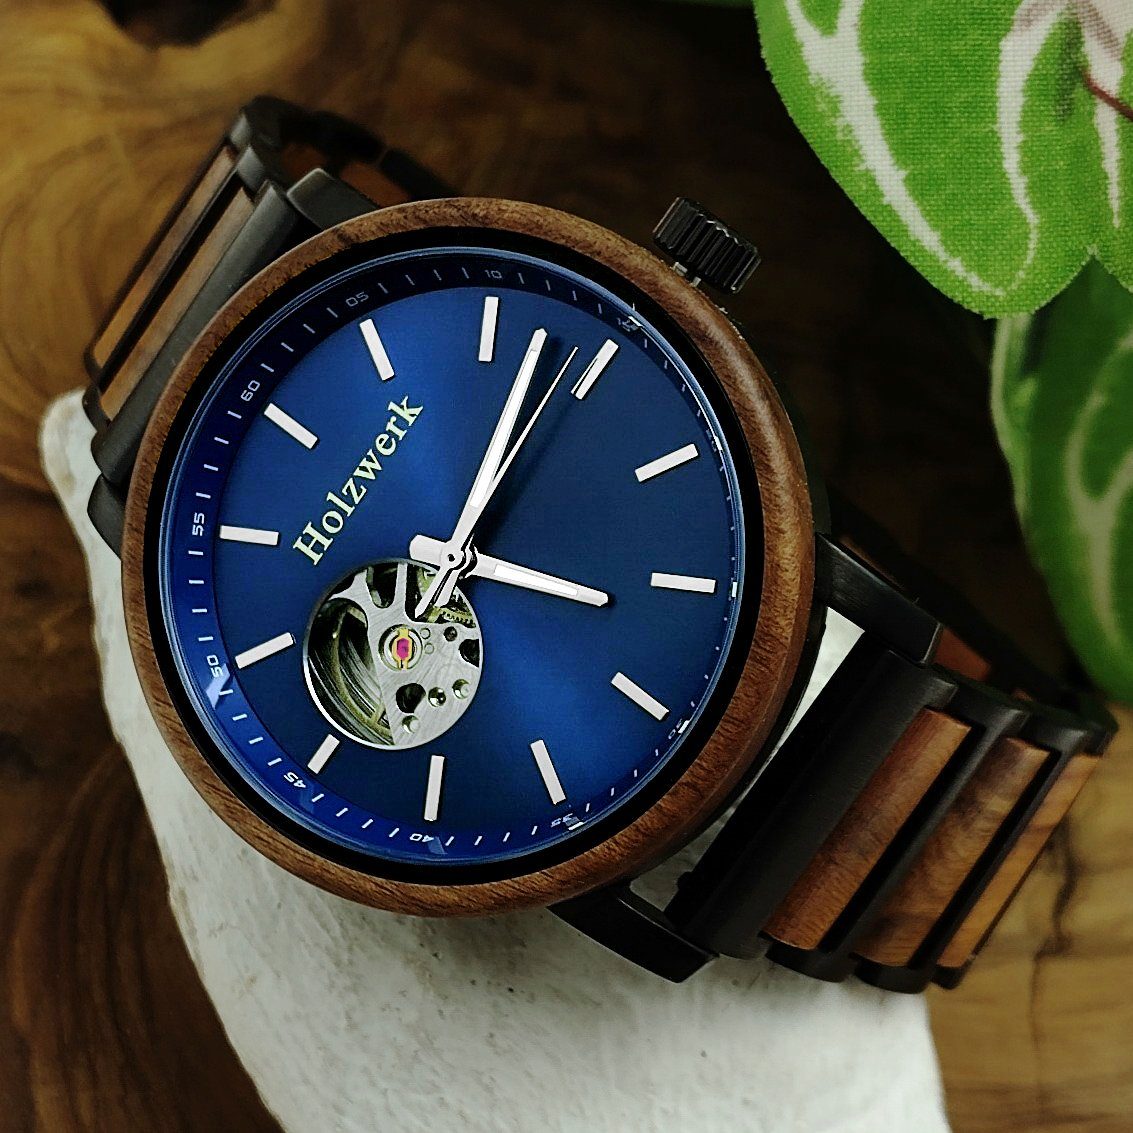 Holzwerk Automatikuhr CLAUSTHAL Herren Armband Edelstahl Holz blau & Uhr, schwarz, braun